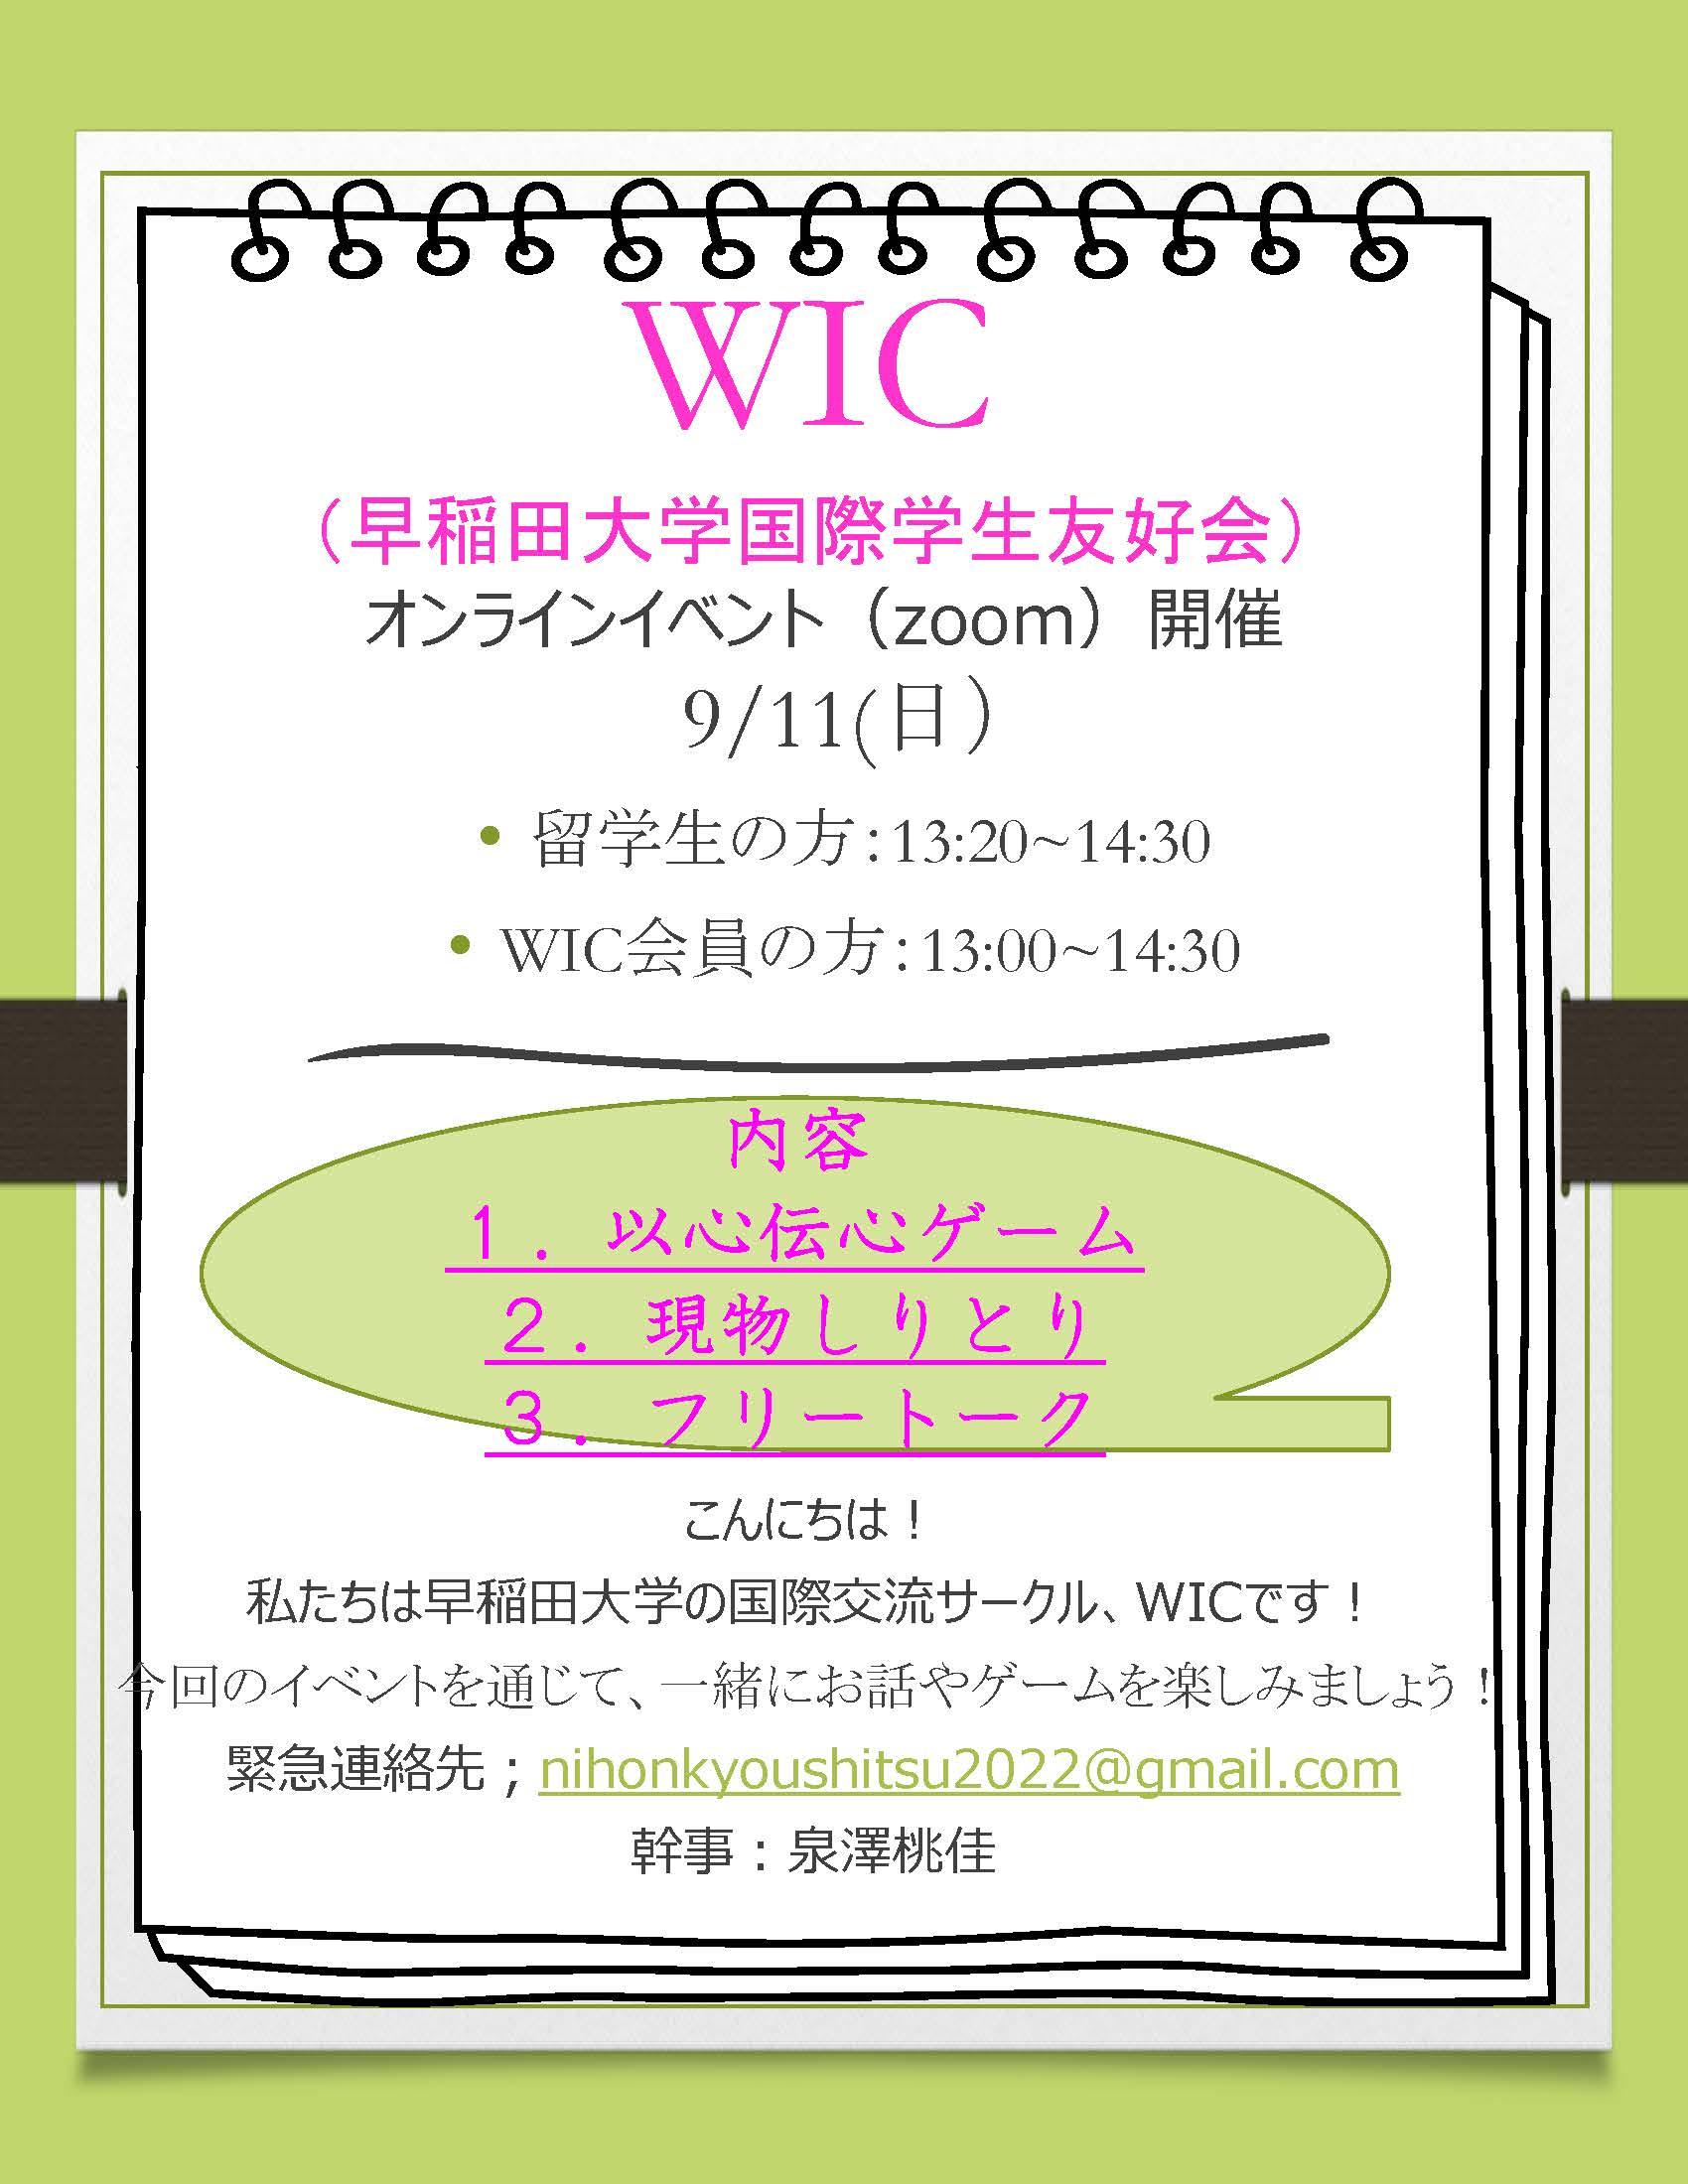 WIC（早稲田大学国際学生友好会）オンラインイベントのお知らせ